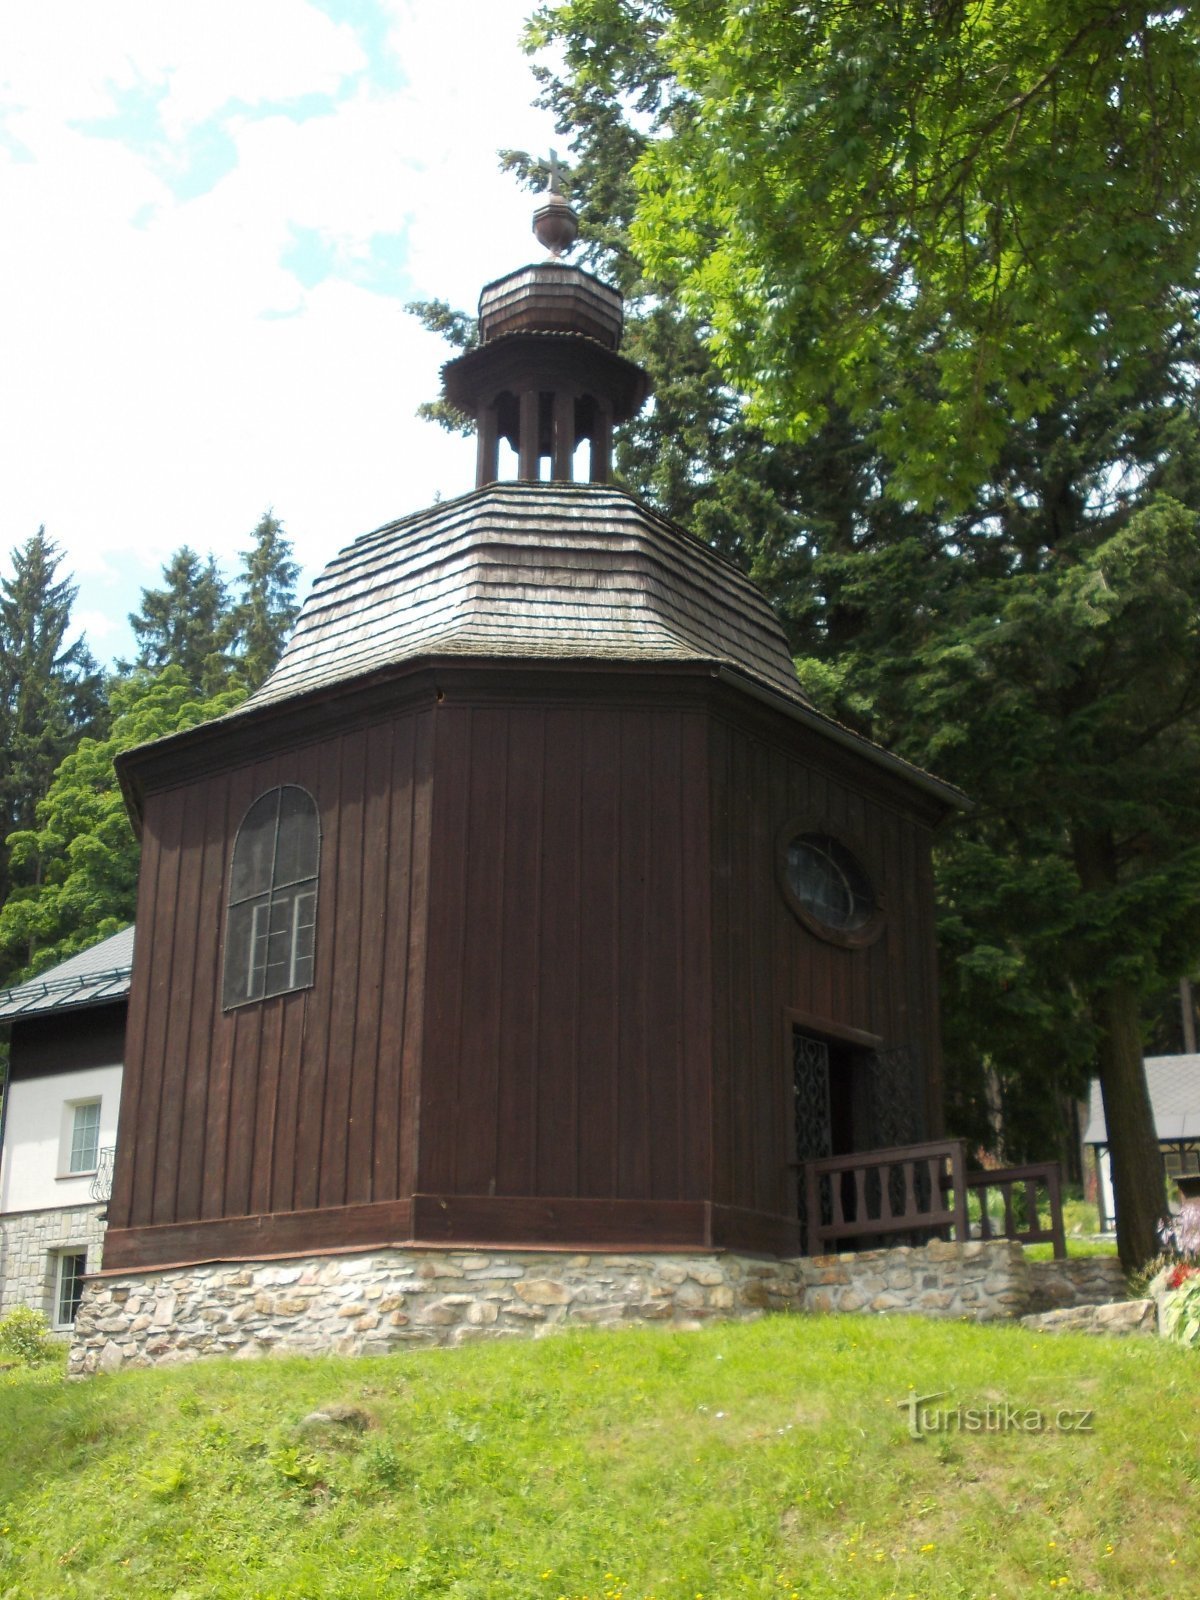 chapelle avec tourelle